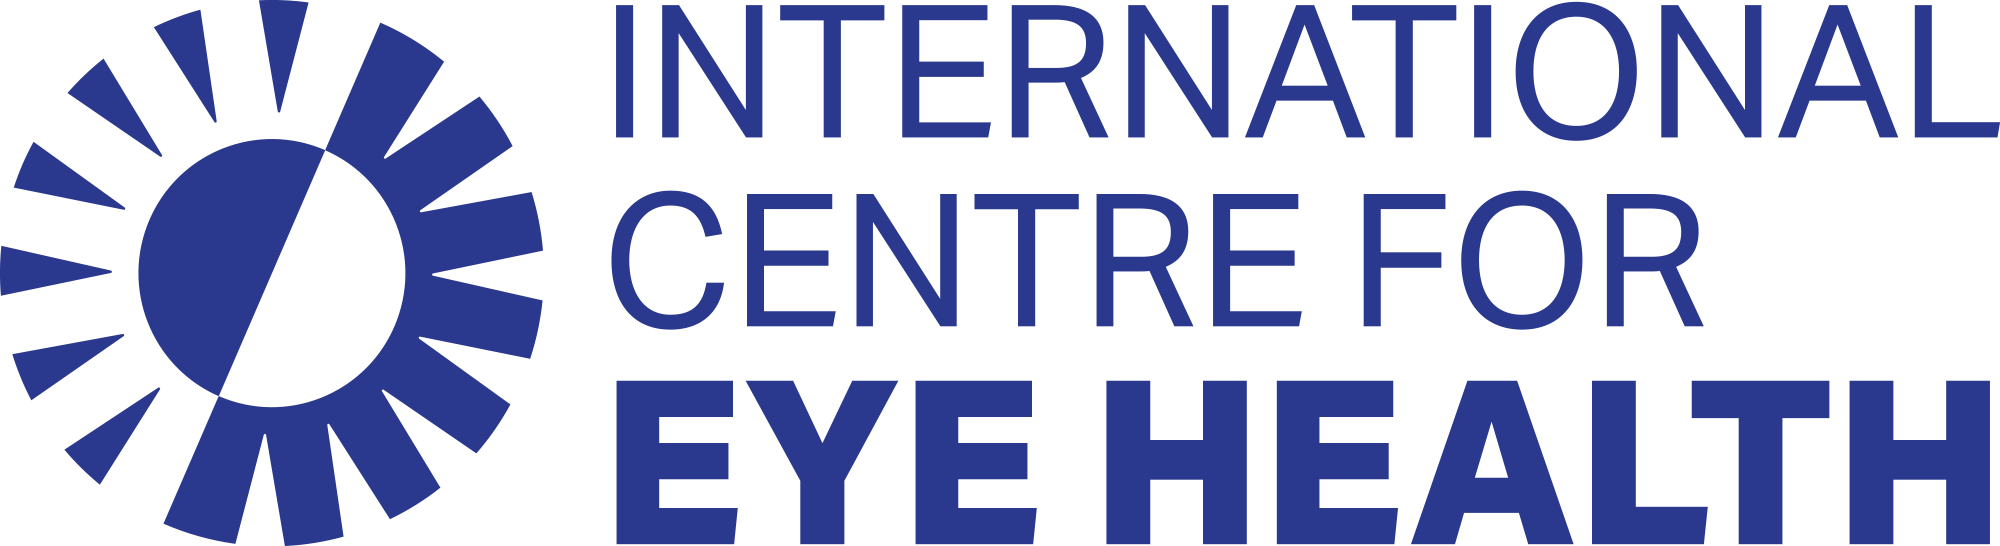 The International Centre for Eye Health logo